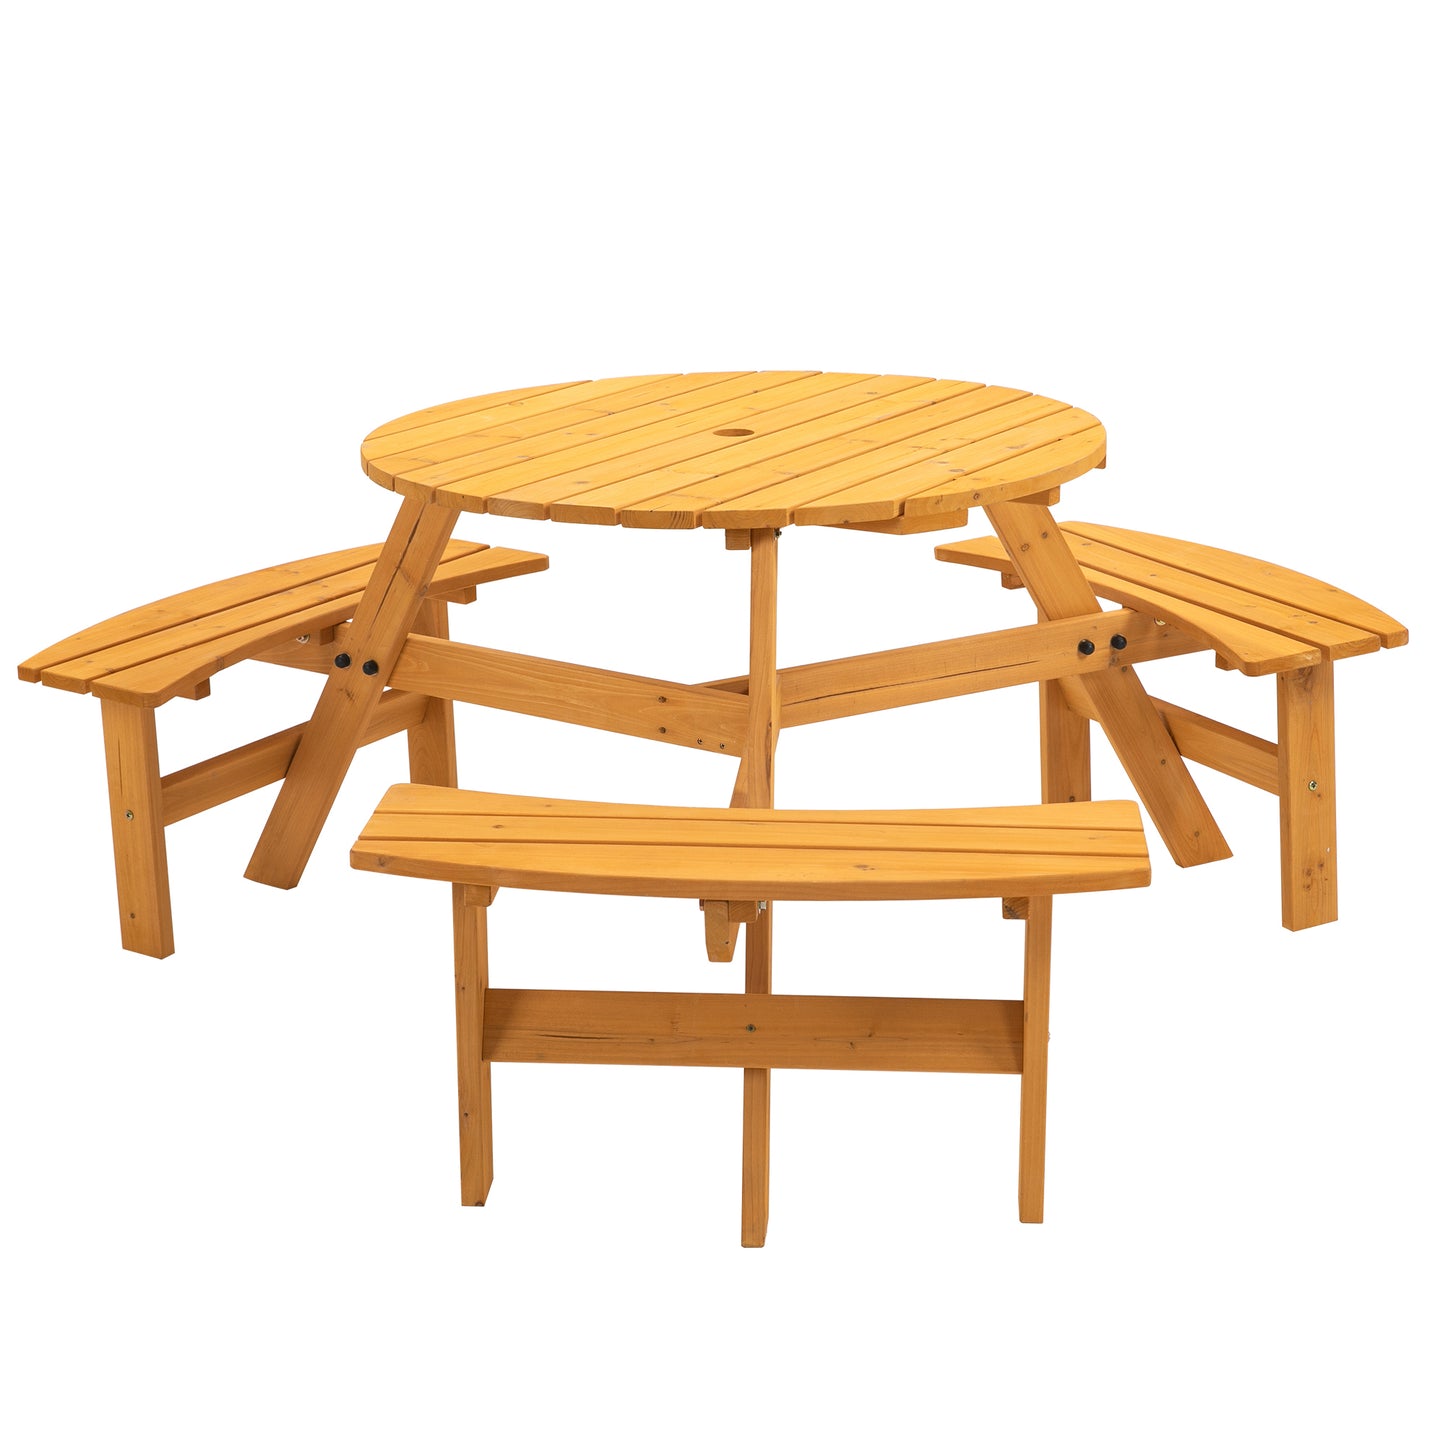 6-Person Circular Outdoor Wooden Picnic Table for Patio